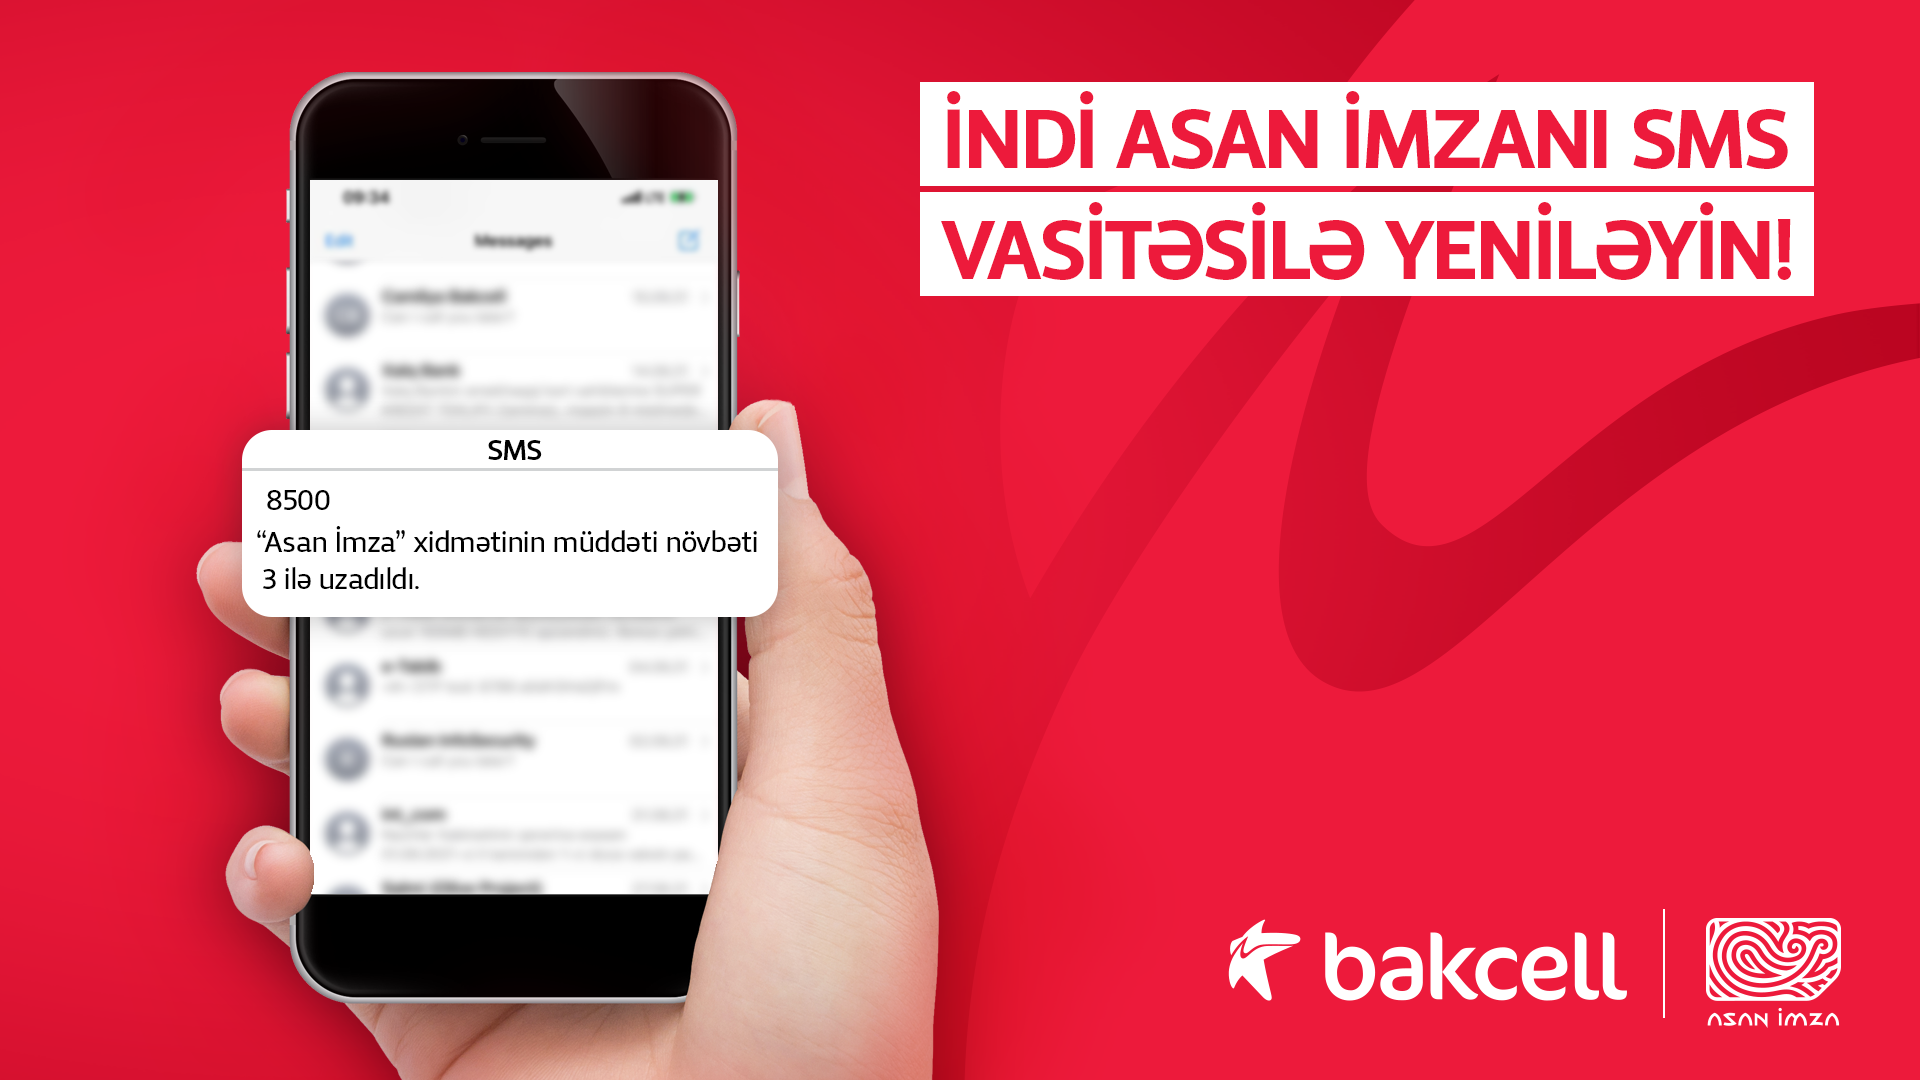 Абоненты Bakcell получили возможность обновлять «Asan İmza» посредством СМС